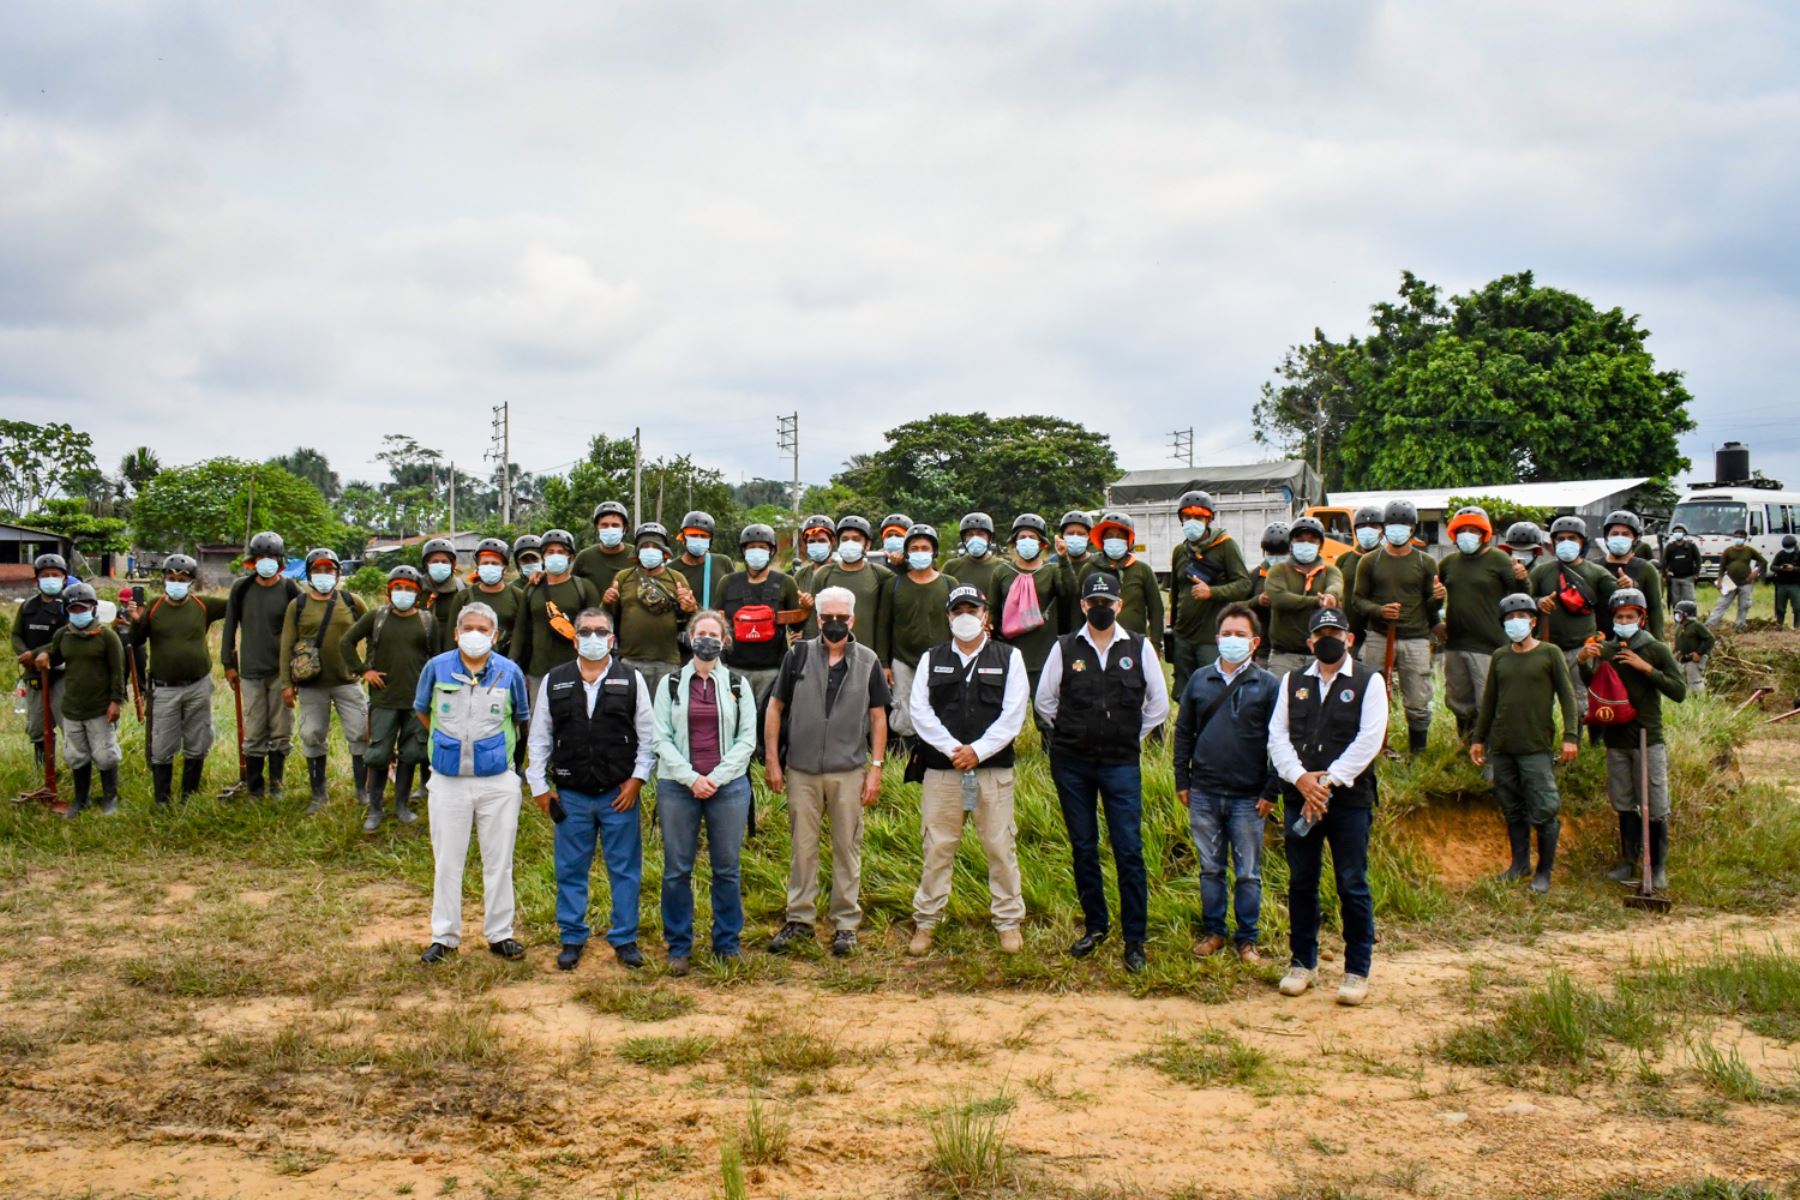 El Perú prevé erradicar este año 18 000 hectáreas de cultivos ilegales de hoja de coca, en el marco de las actividades iniciadas en la región Ucayali por el Proyecto Especial de Control y Reducción de Cultivos Ilegales en el Alto Huallaga (Corah), del Ministerio del Interior.